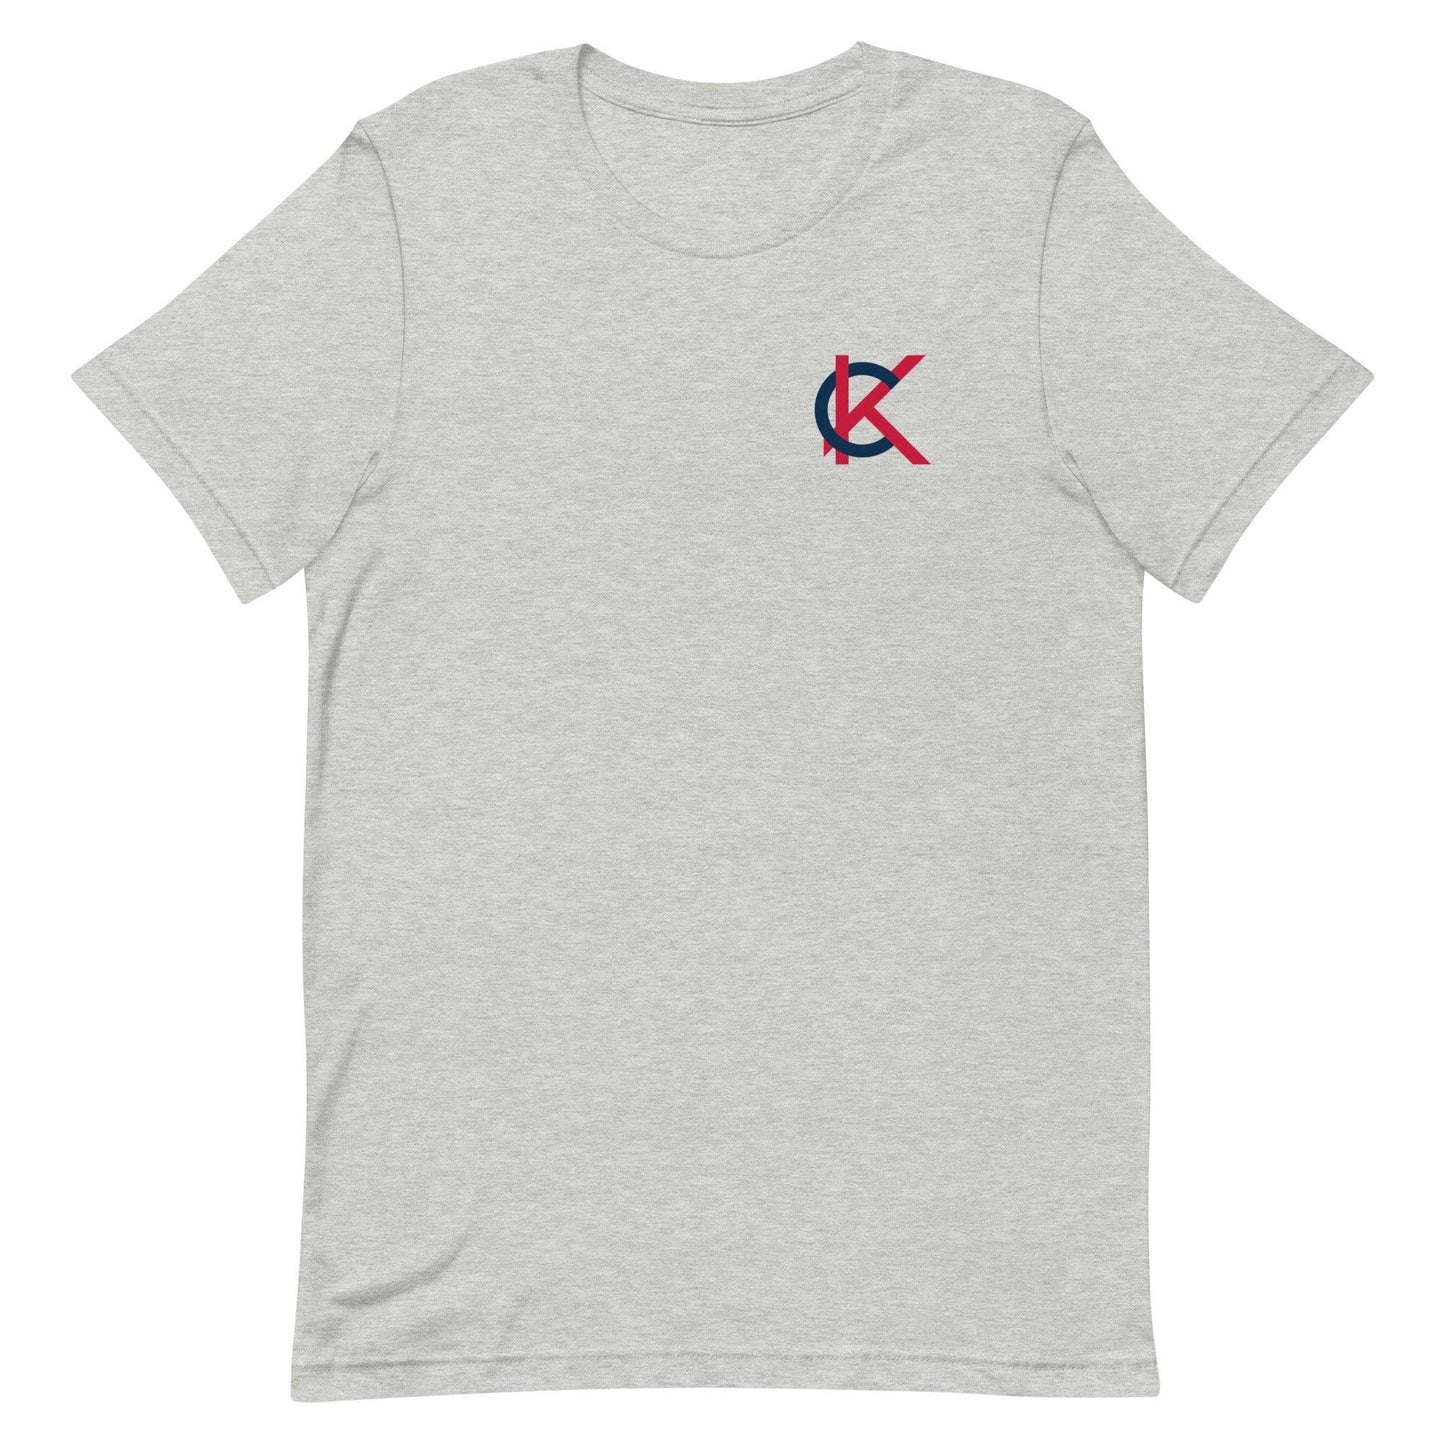 Kutter Crawford "Elite" t-shirt - Fan Arch